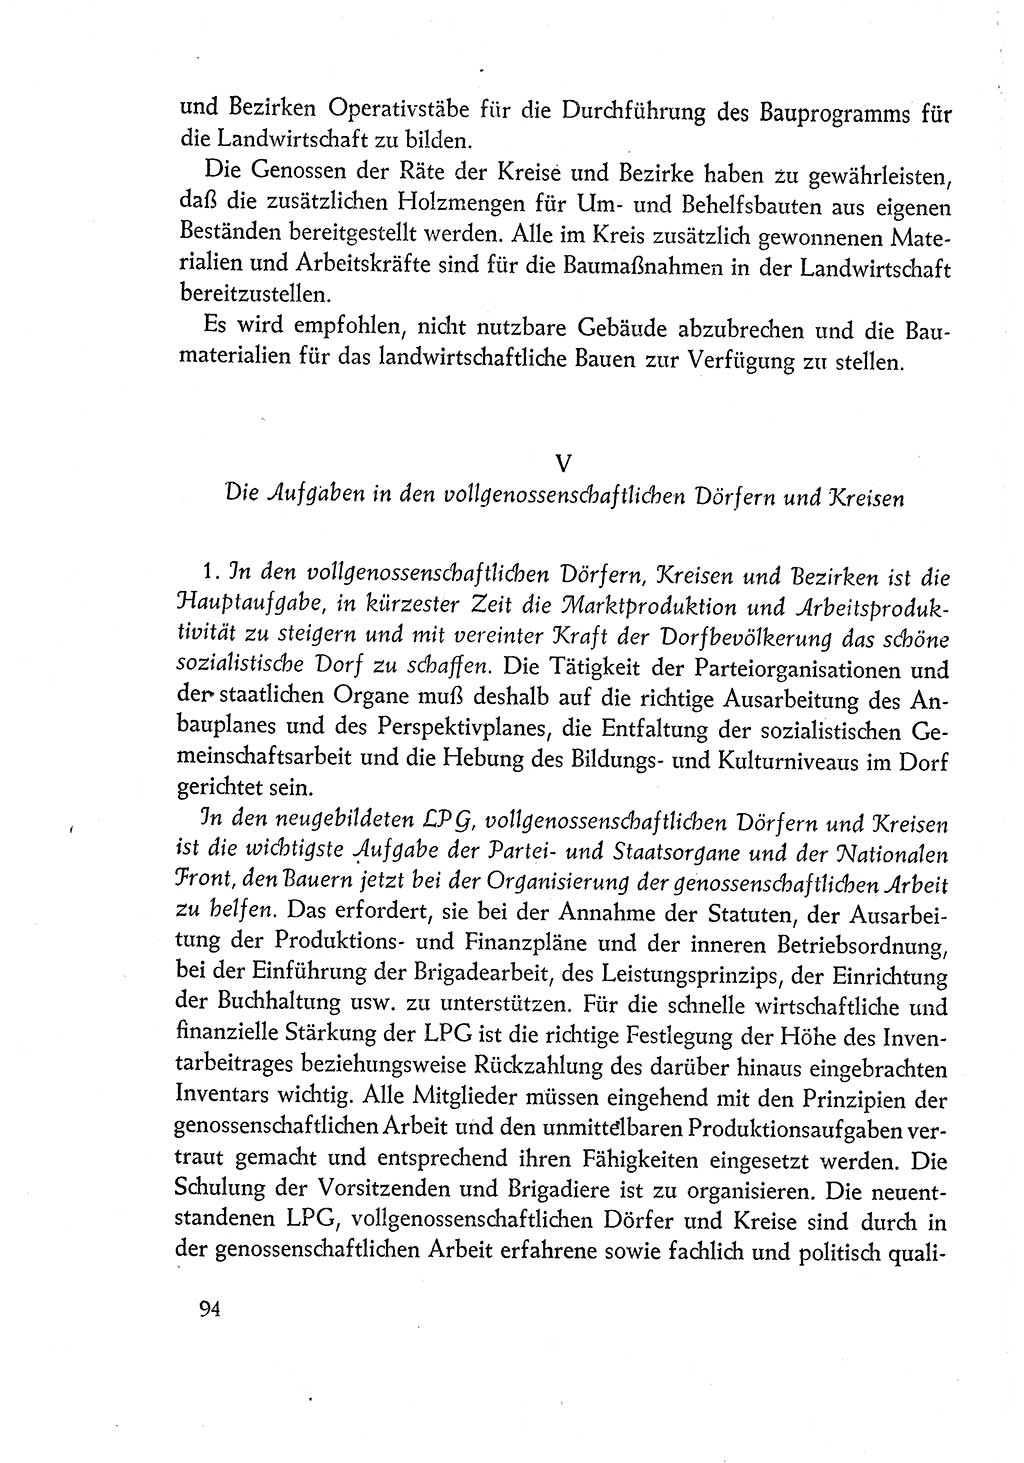 Dokumente der Sozialistischen Einheitspartei Deutschlands (SED) [Deutsche Demokratische Republik (DDR)] 1960-1961, Seite 94 (Dok. SED DDR 1960-1961, S. 94)